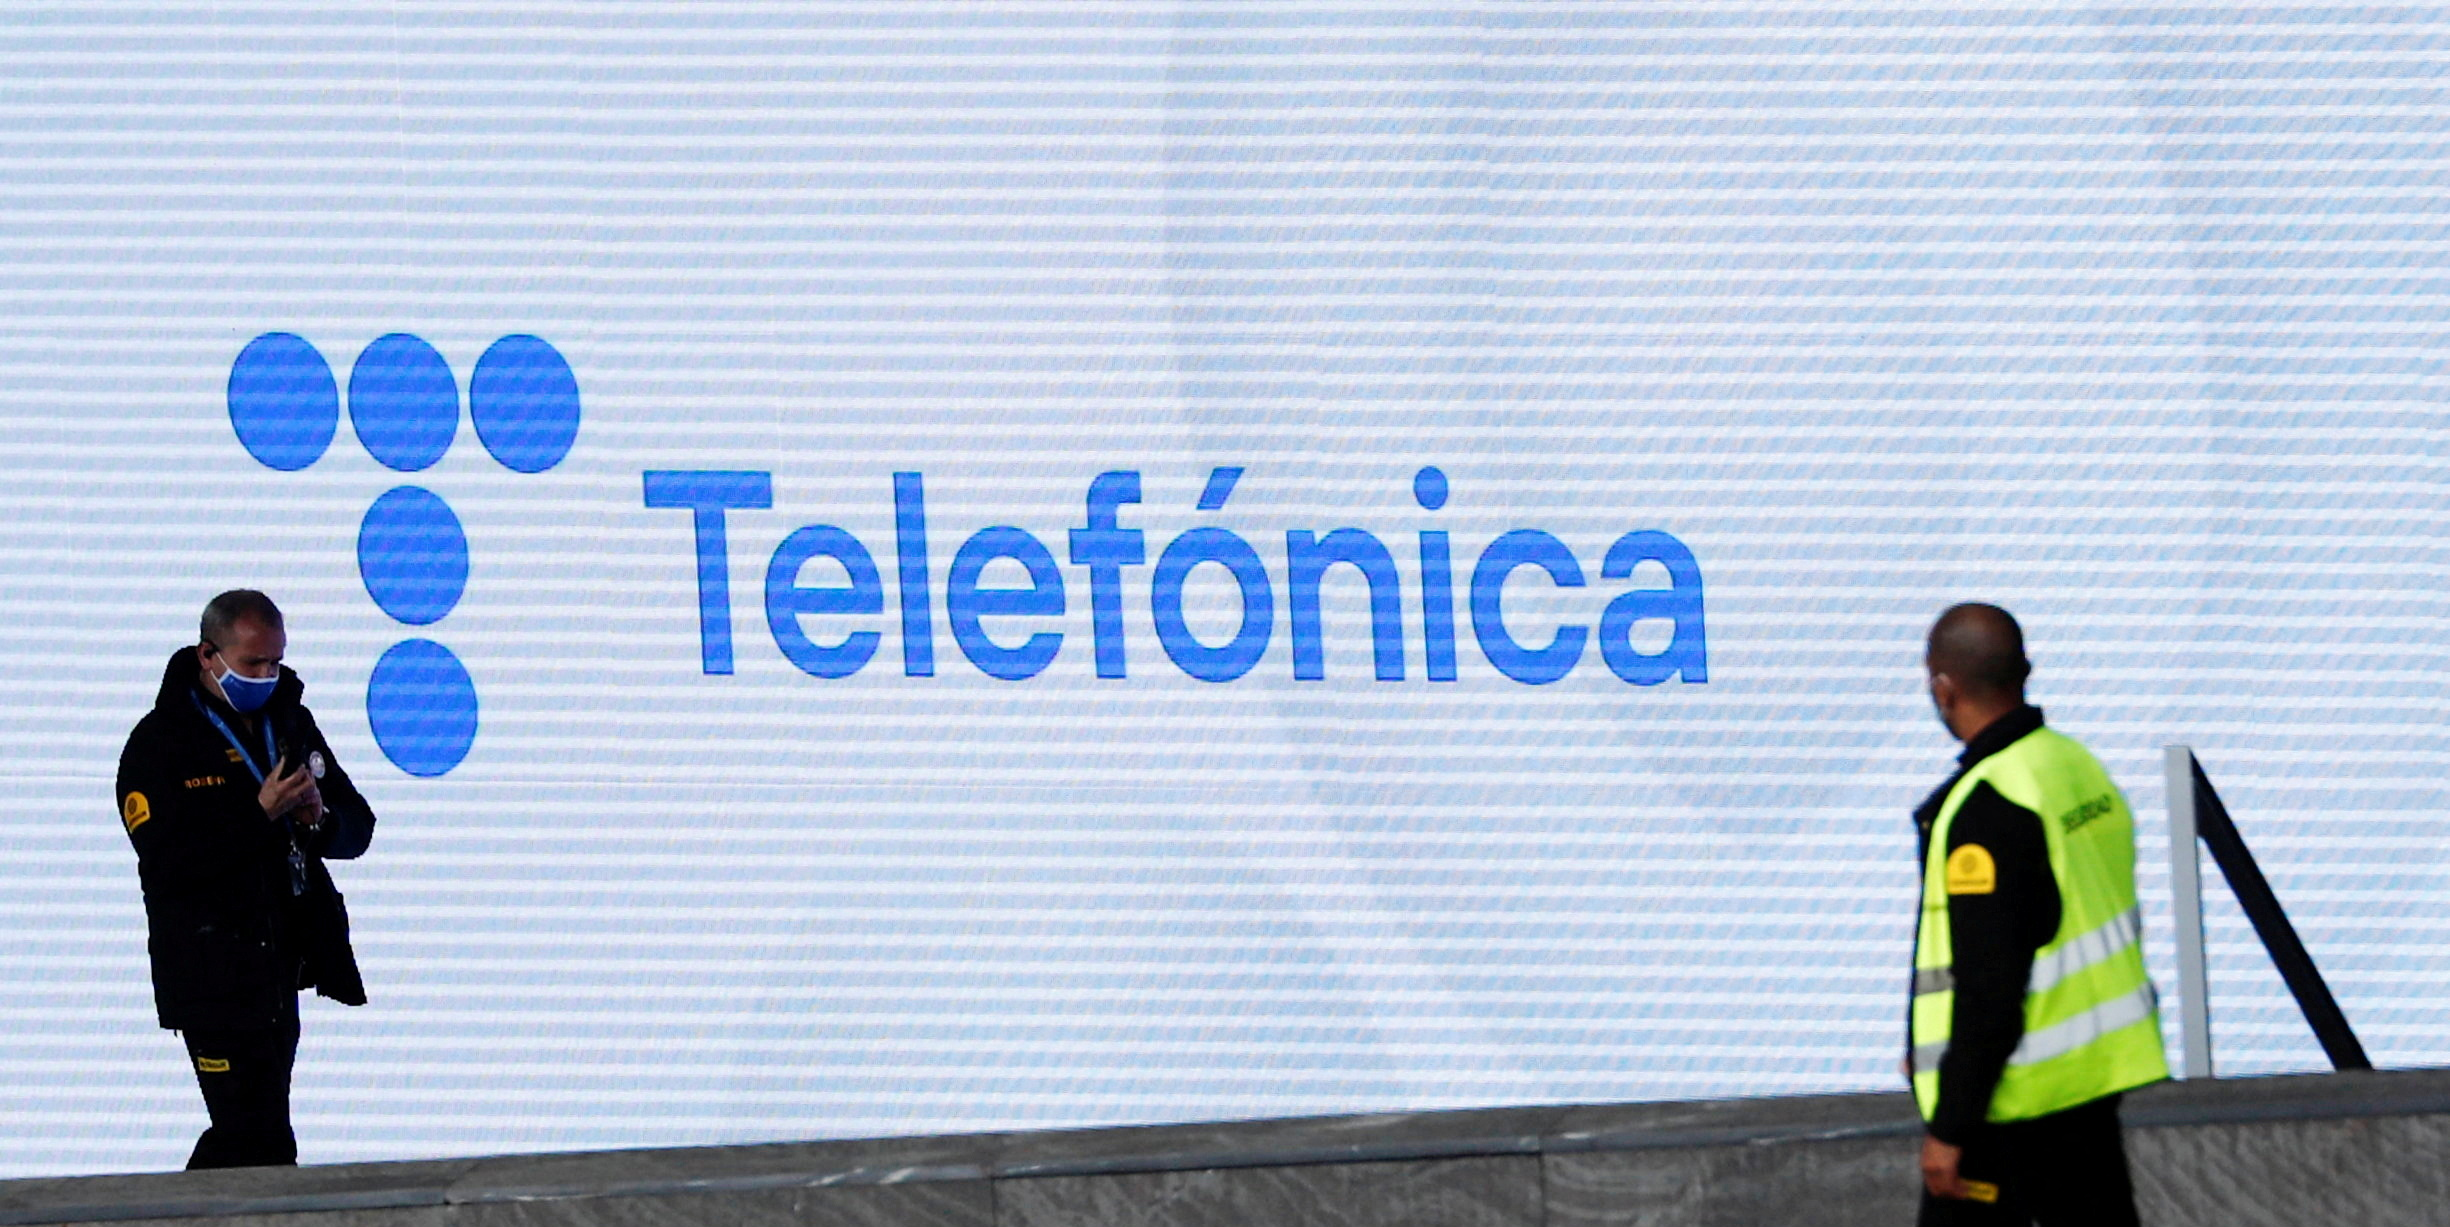 Madrid a porté sa participation dans Telefonica à 10% pour contrer le saoudien STC